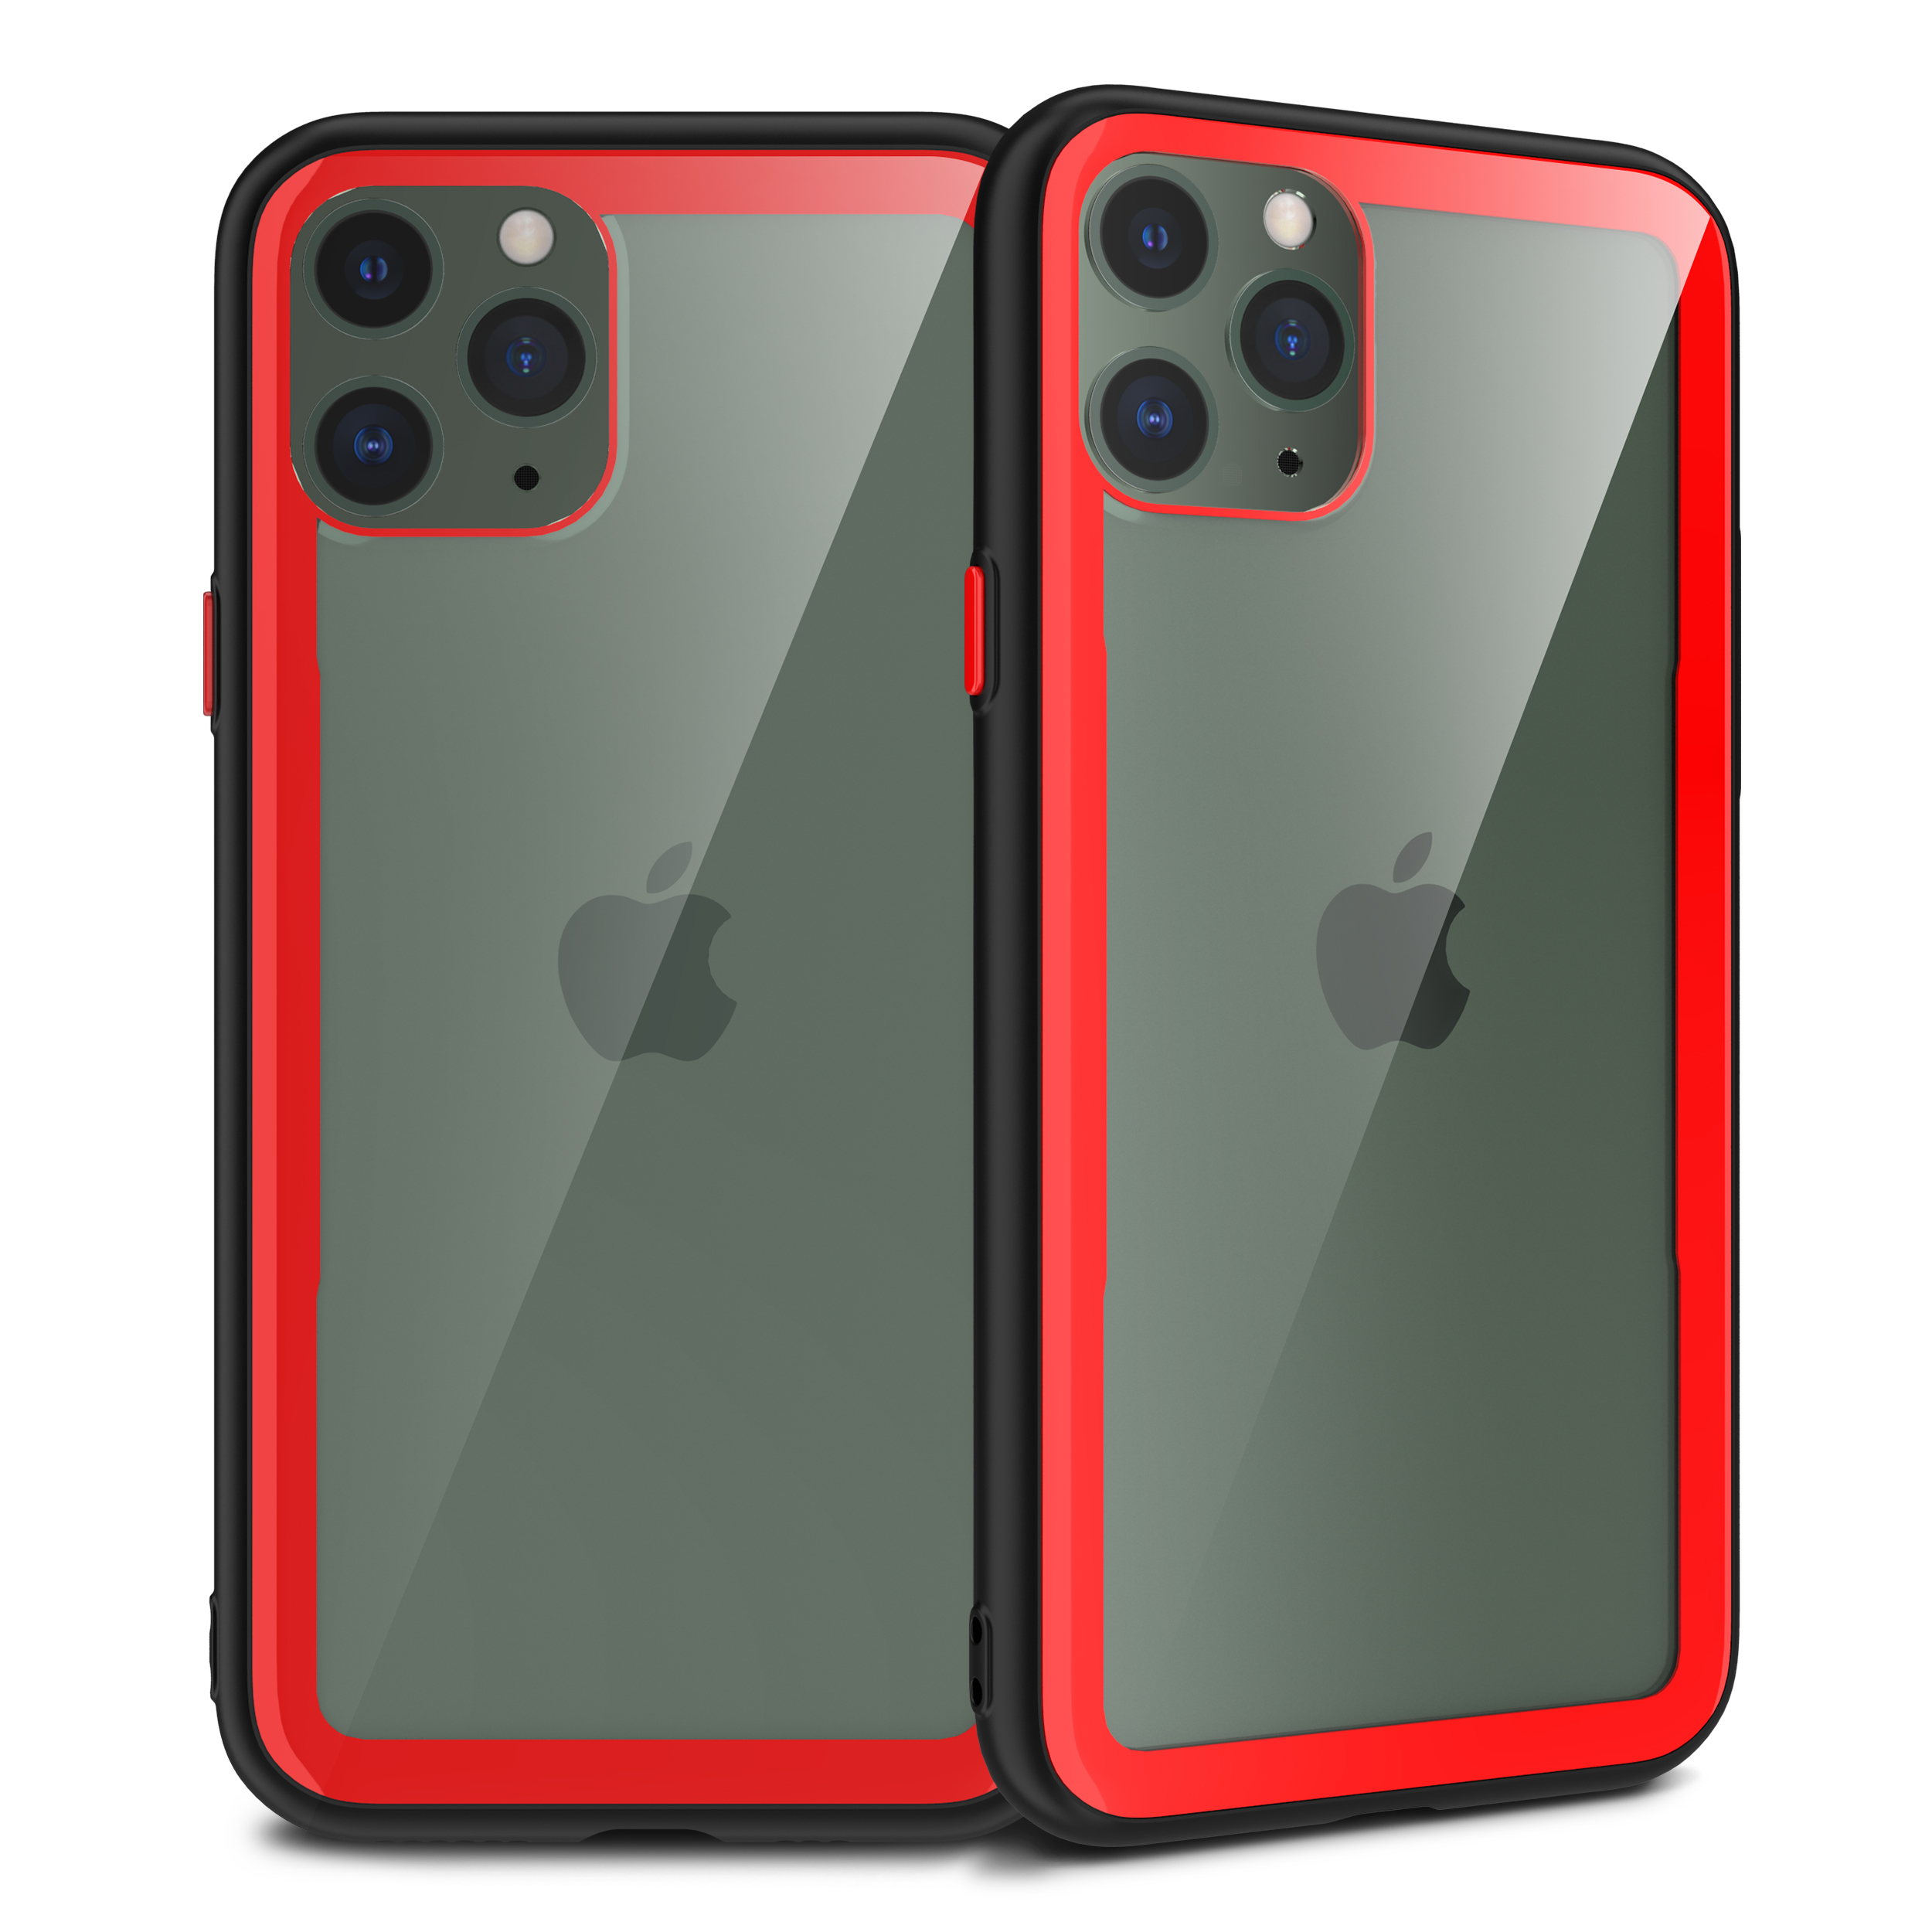 iPHONE 11 Pro Max (6.5in) Clear Slim Matte Hybrid Bumper Case (Black Red)